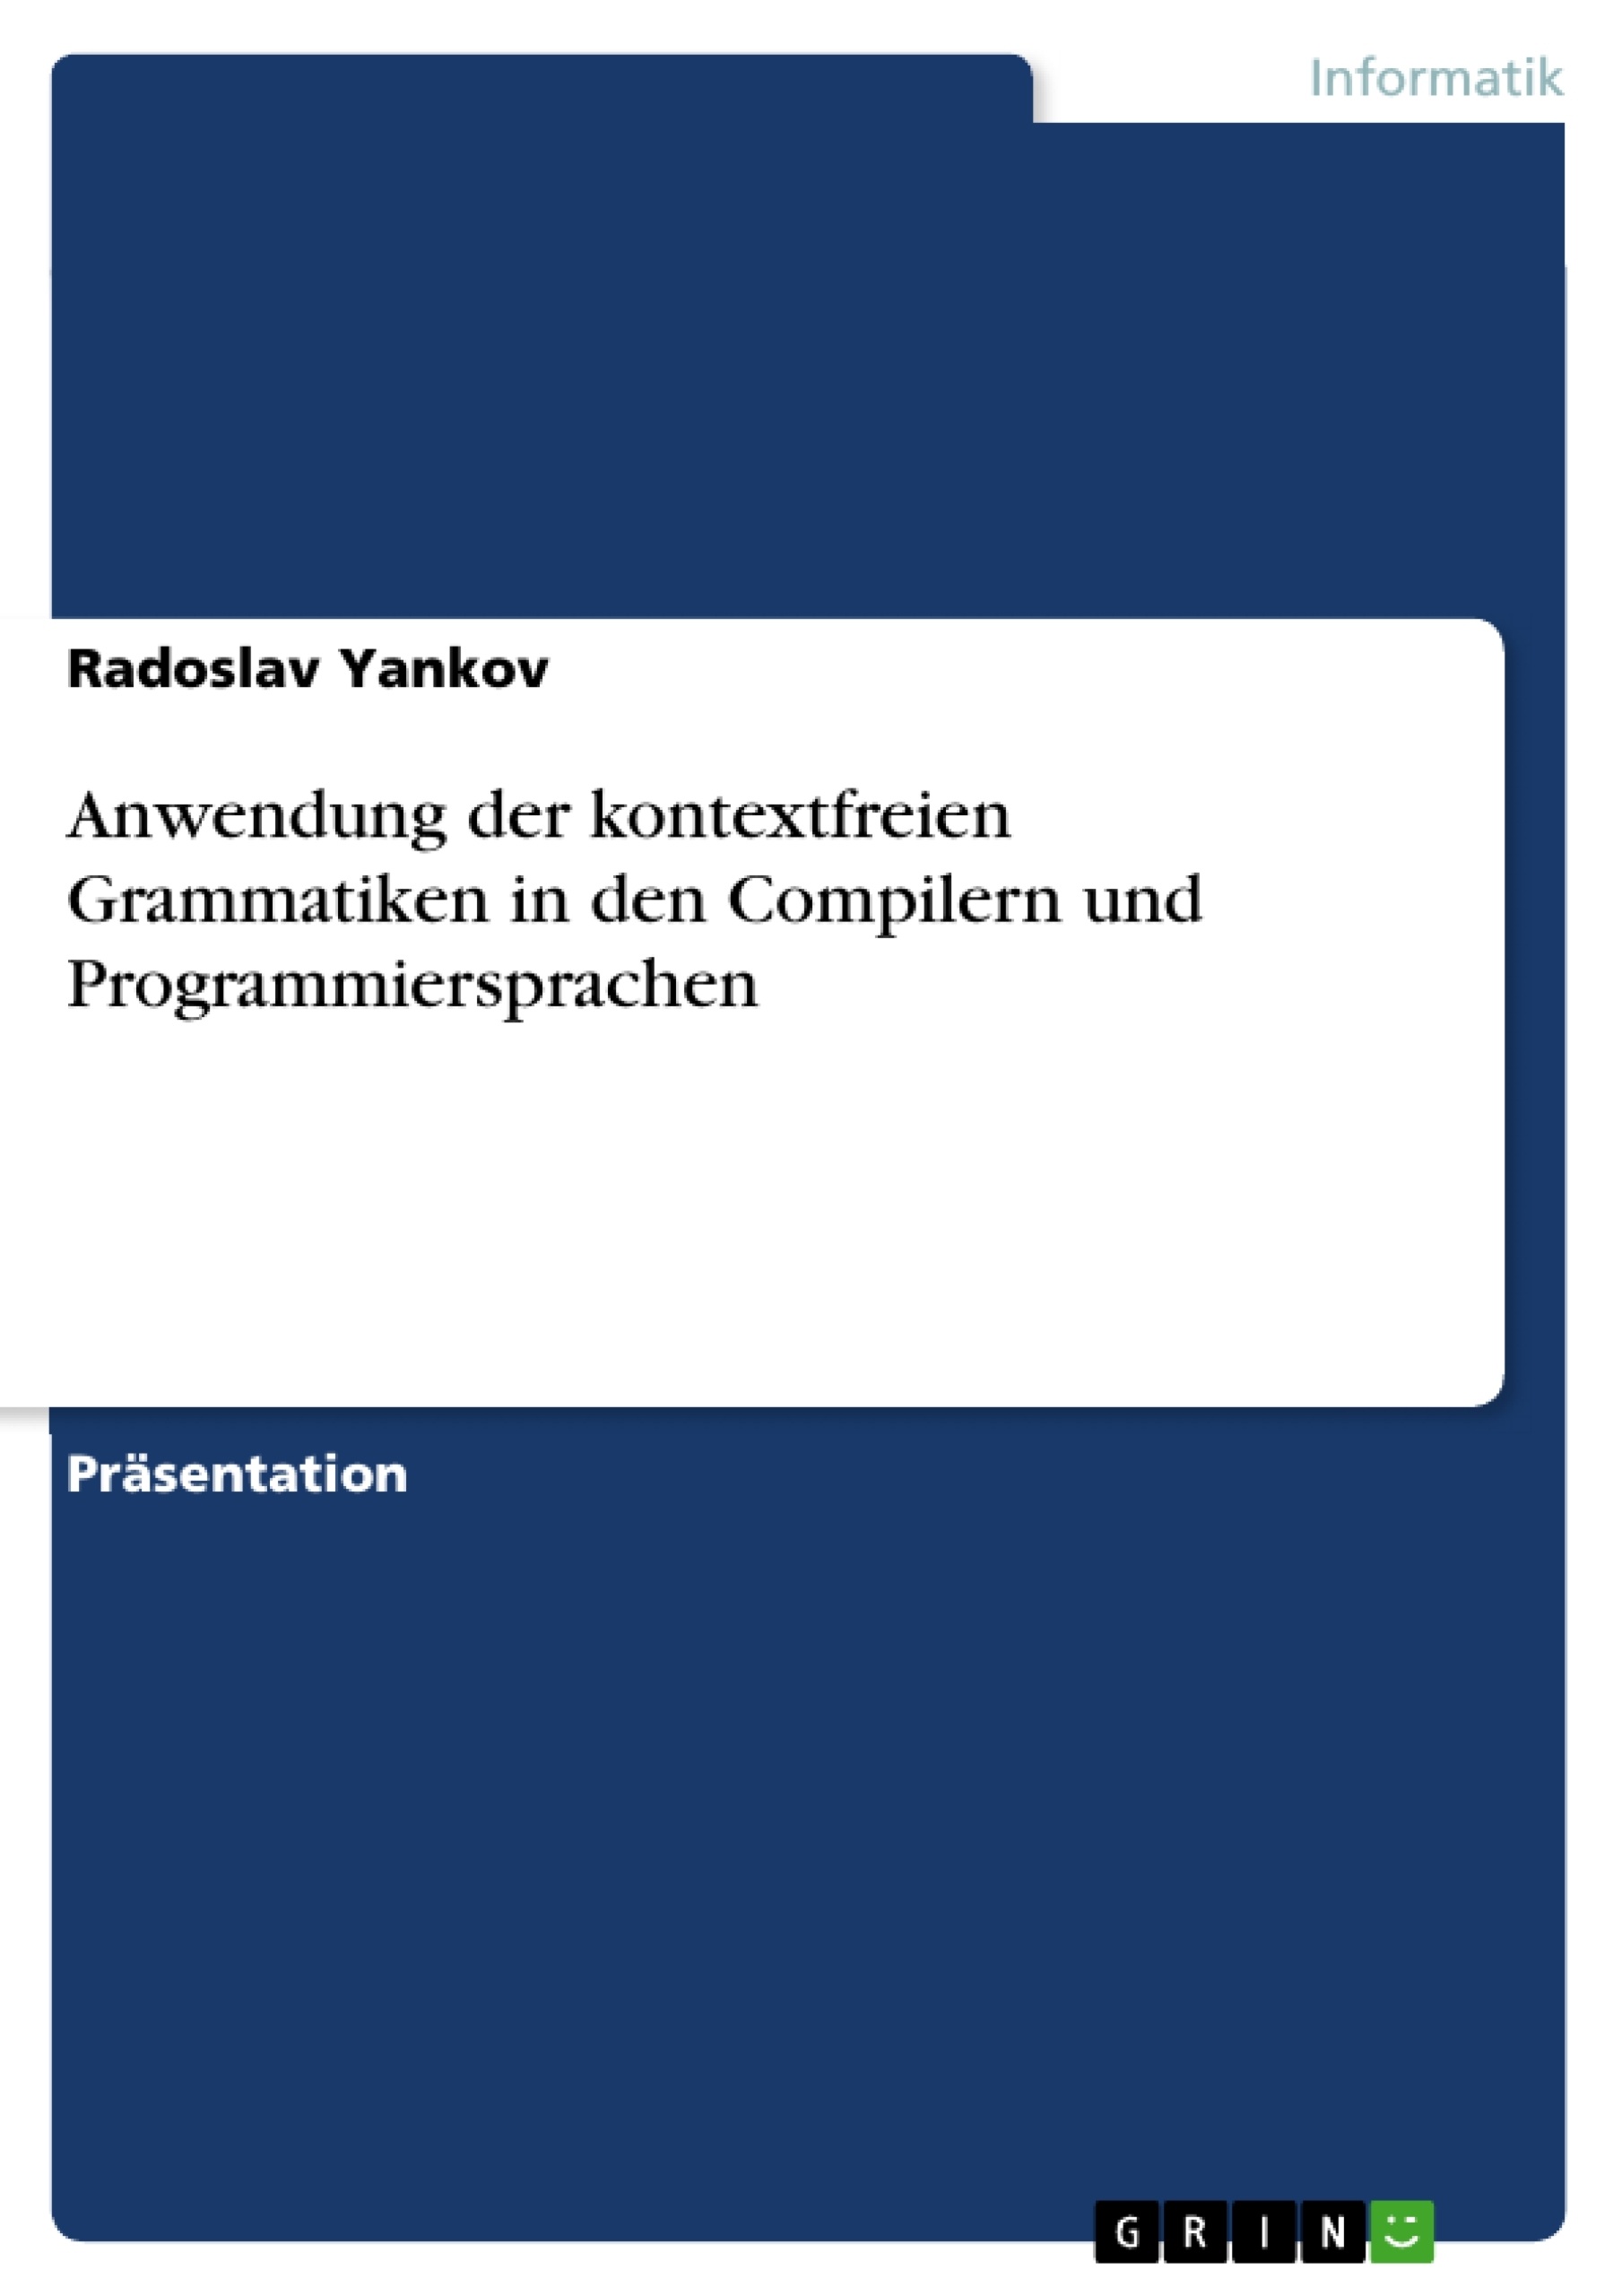 Title: Anwendung der kontextfreien Grammatiken in den Compilern und Programmiersprachen